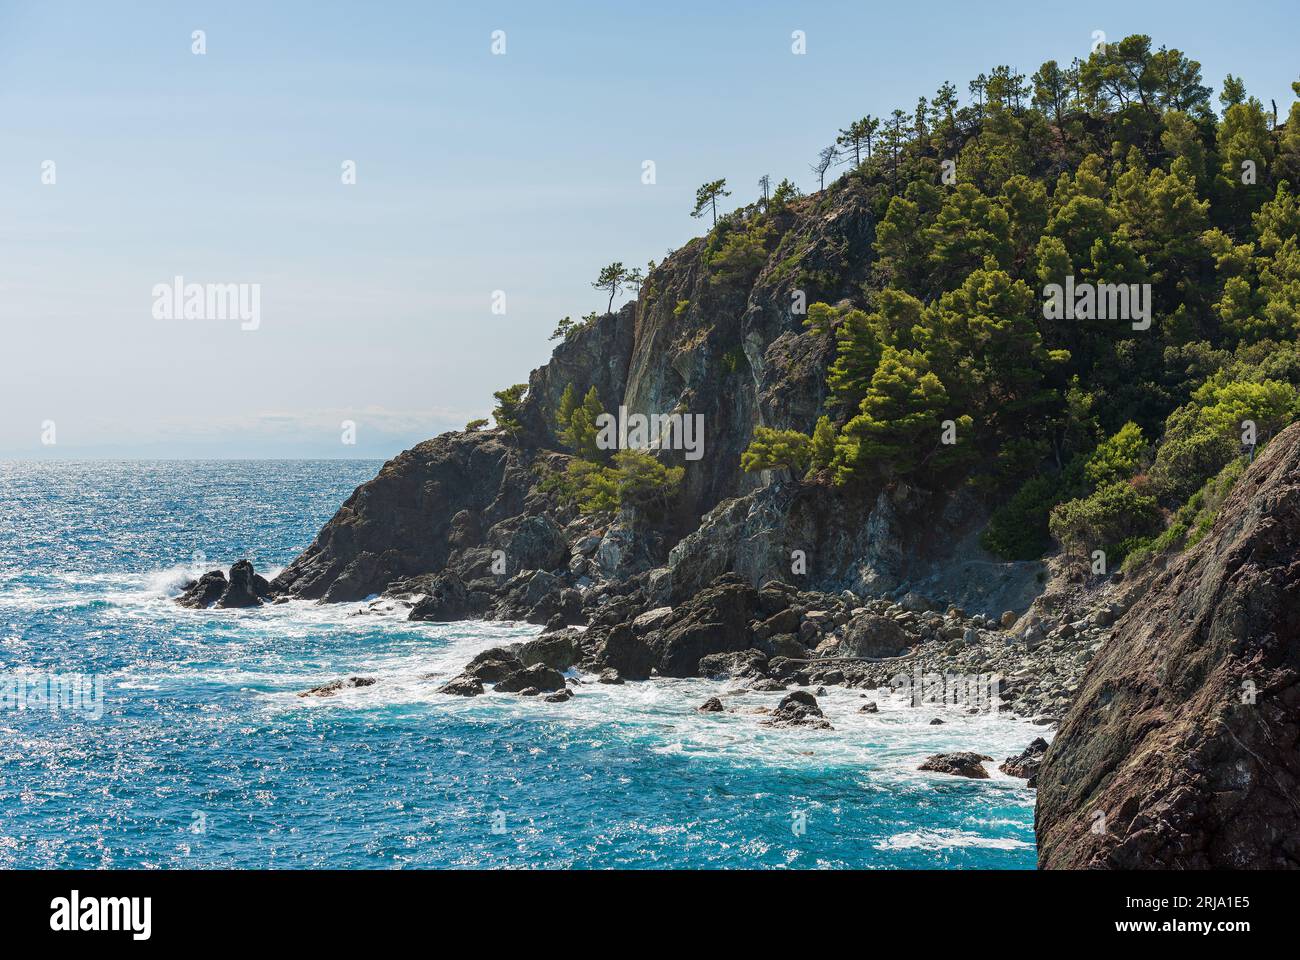 Costa rocciosa e scogliere con il blu del Mediterraneo, tra il piccolo paese di Framura e Bonassola, cinque Terre, la Spezia, Liguria, Italia. Foto Stock